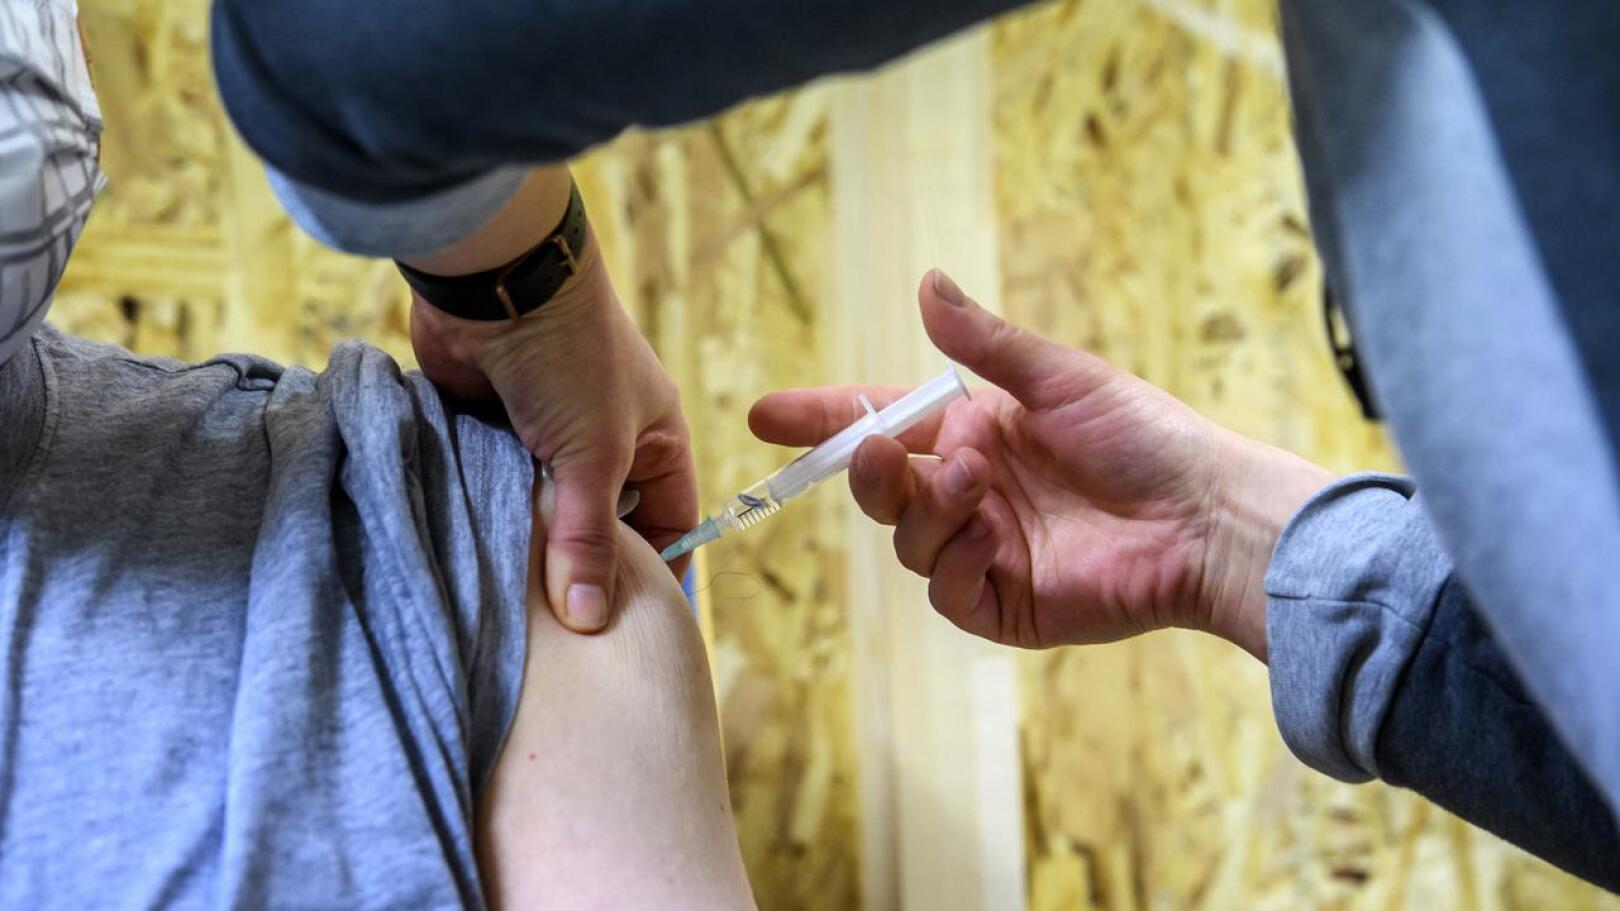 Riskiryhmiin kuuluvia lapsia on rokotettu Helmessä jo jouluviikolta alkaen, mutta nyt rokotetta tarjotaan myös perusterveille 5-11-vuotiaille lapsille.